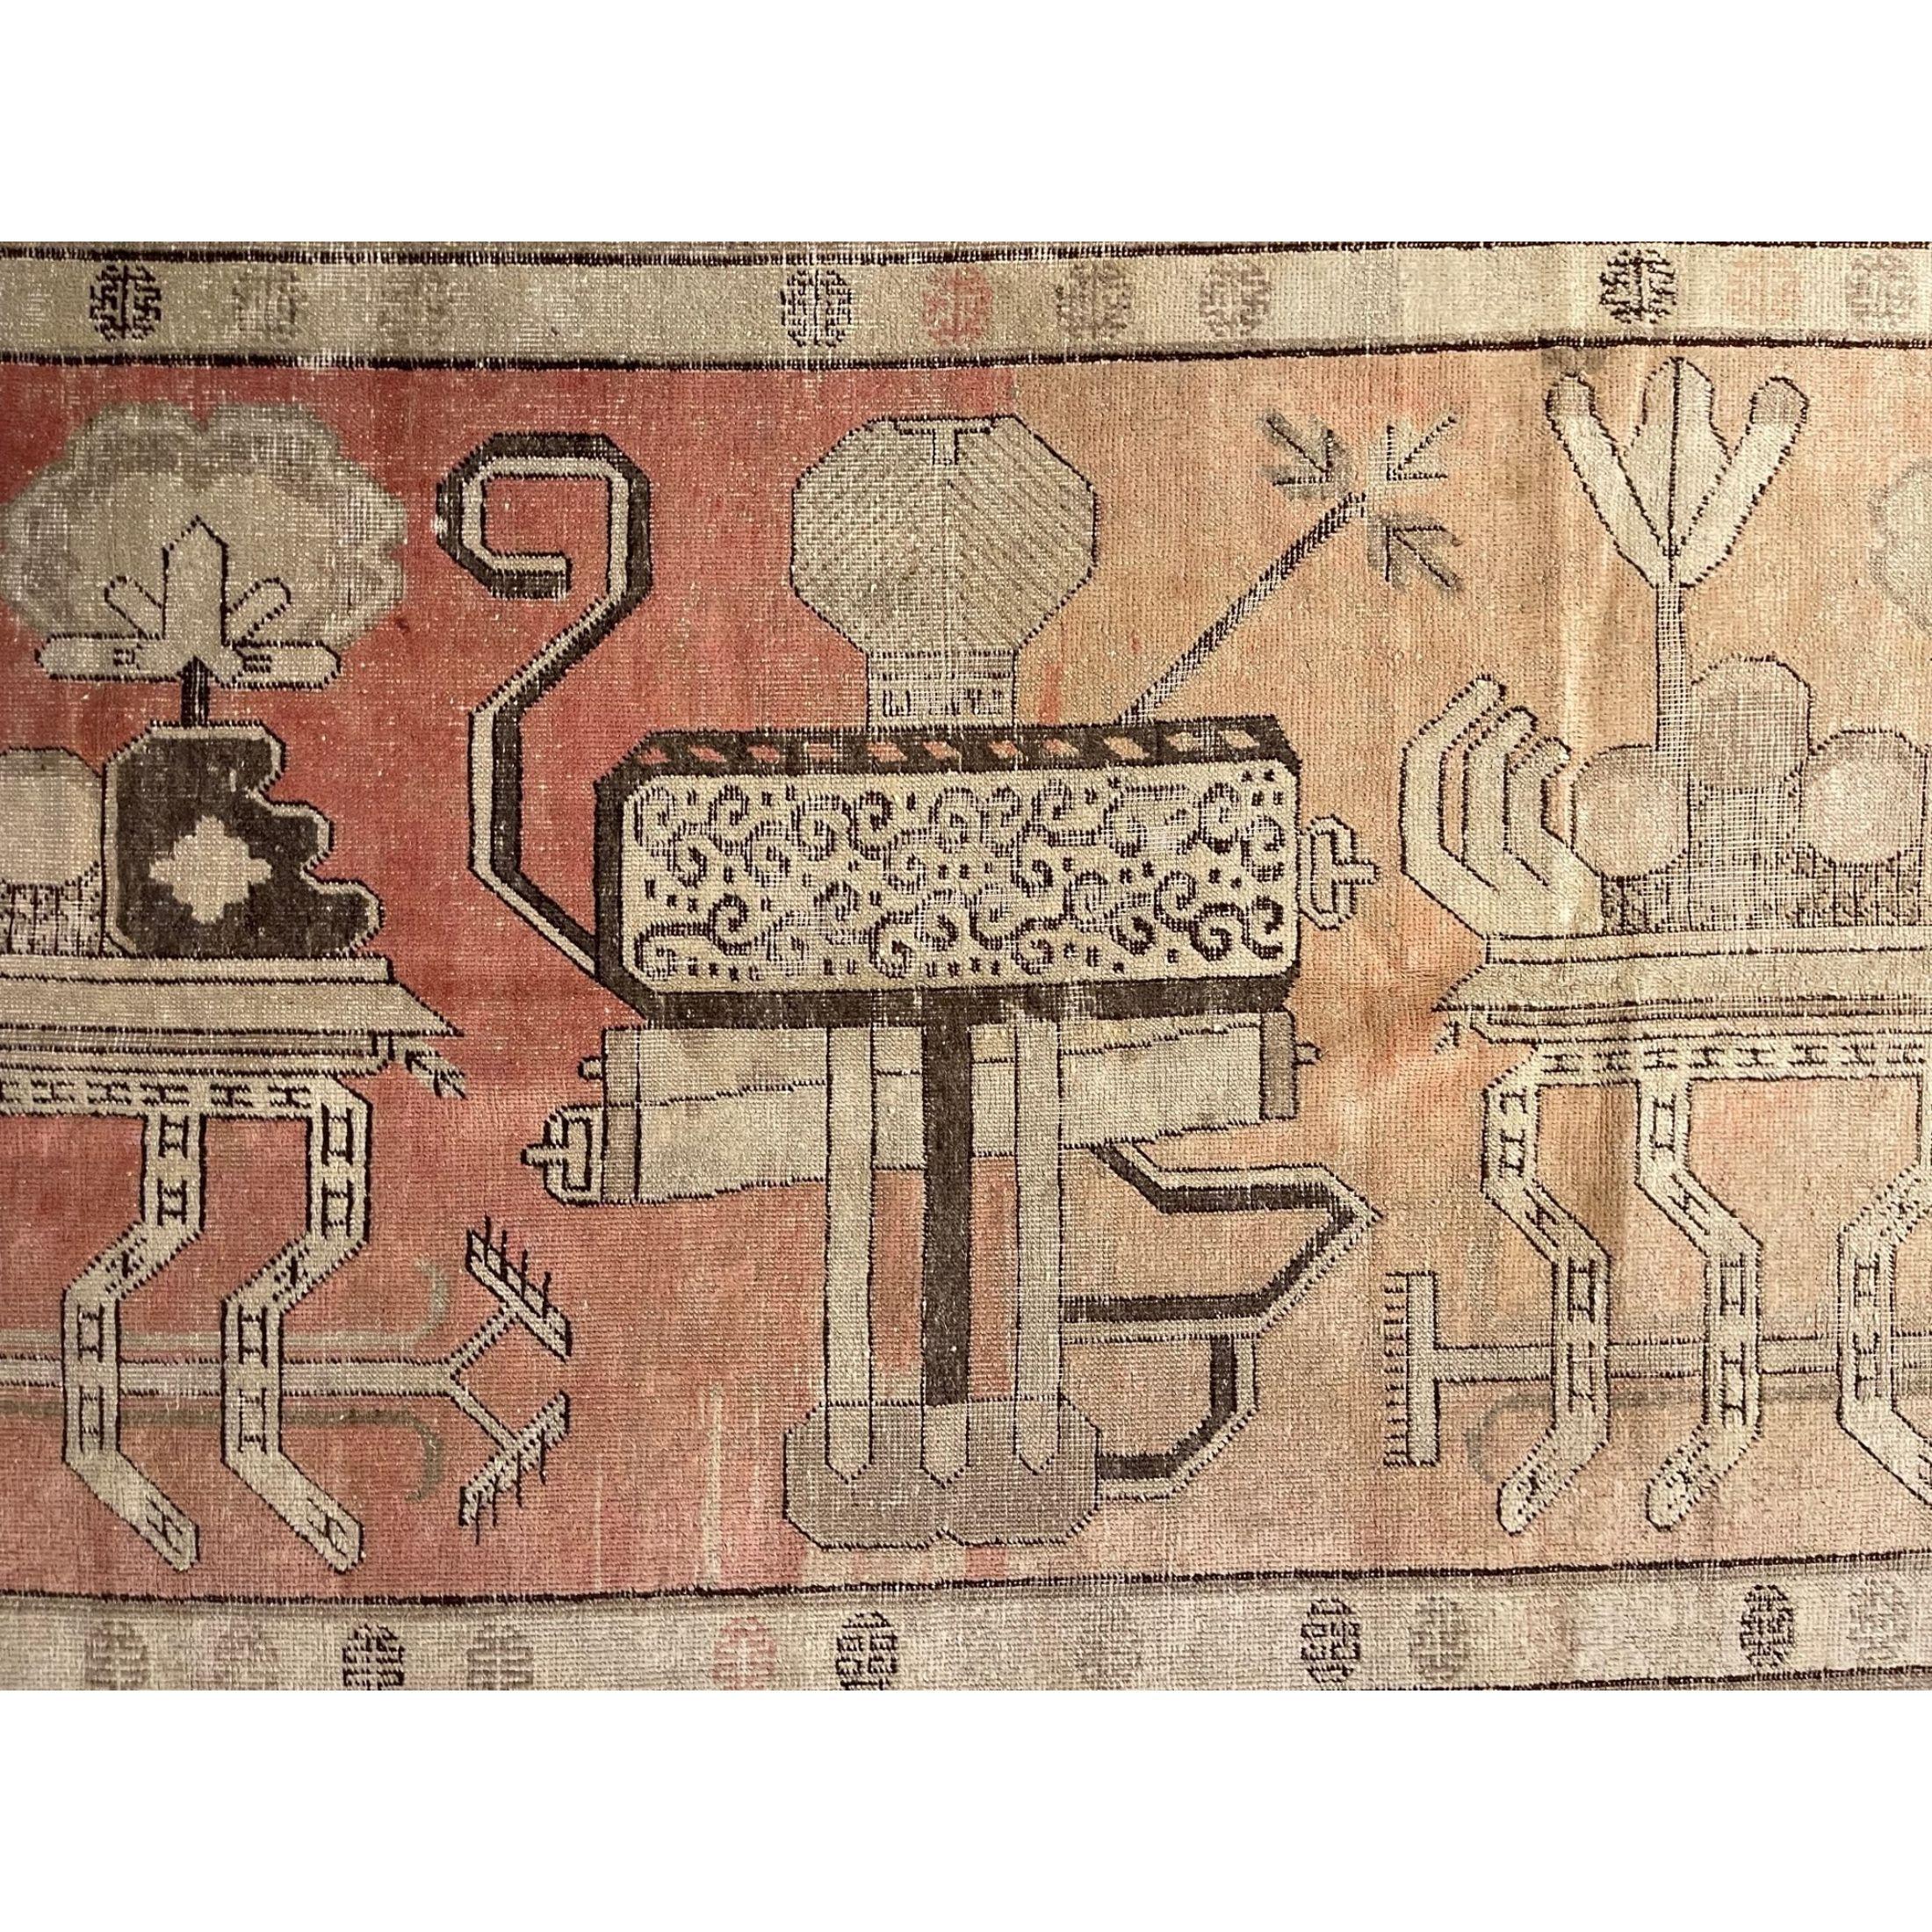 Tapis anciens de Samarcande : L'oasis désertique de Khotan était une étape importante sur la route de la soie. Les habitants de Khotan étaient des noueurs de tapis experts qui produisaient des tapis anciens de grande qualité pour le commerce